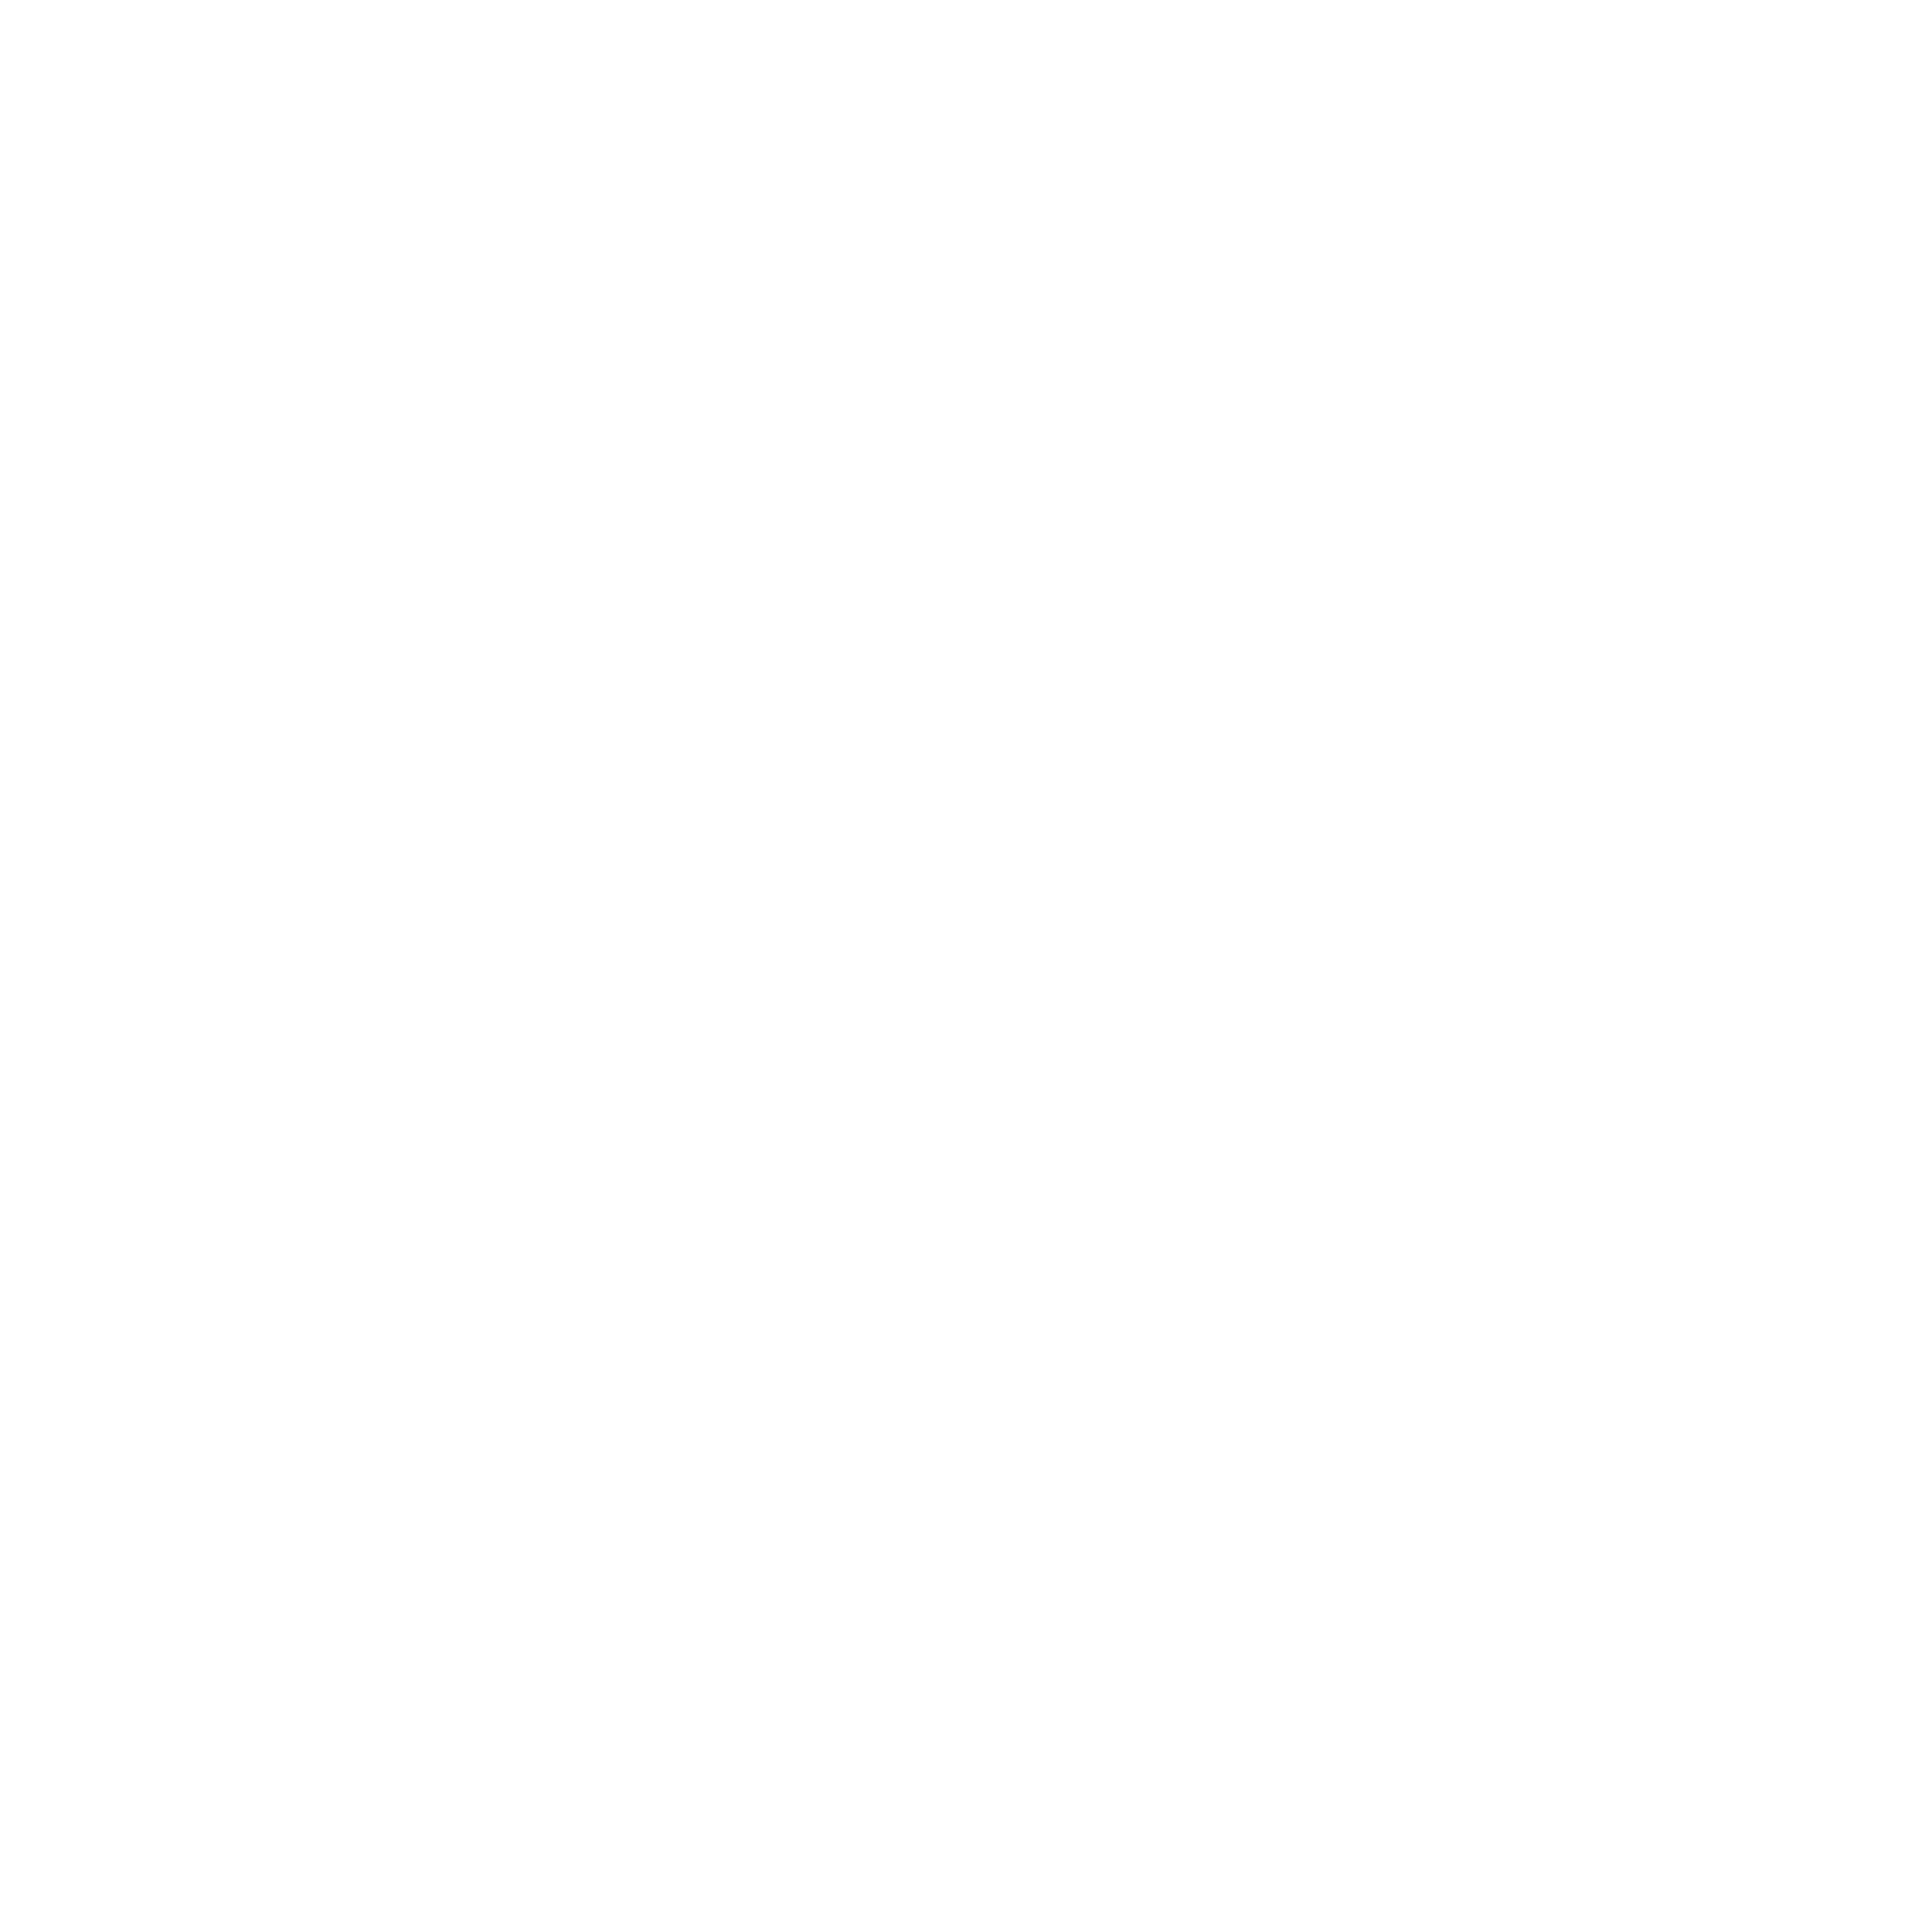 SpectreXweb